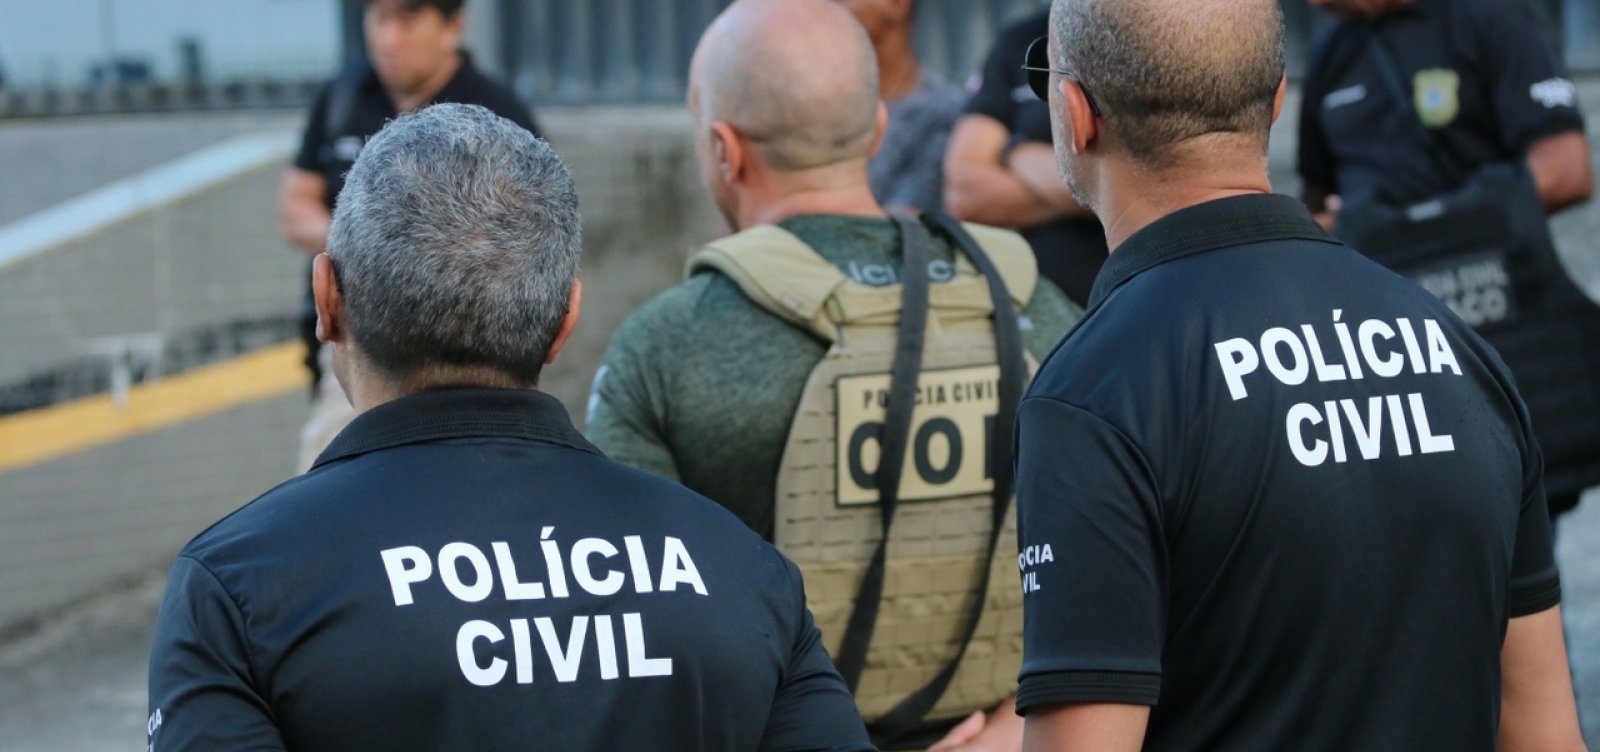 Vinte criminosos envolvidos em boatos ou tentativas de causar pânico em escolas são alcançados na Bahia